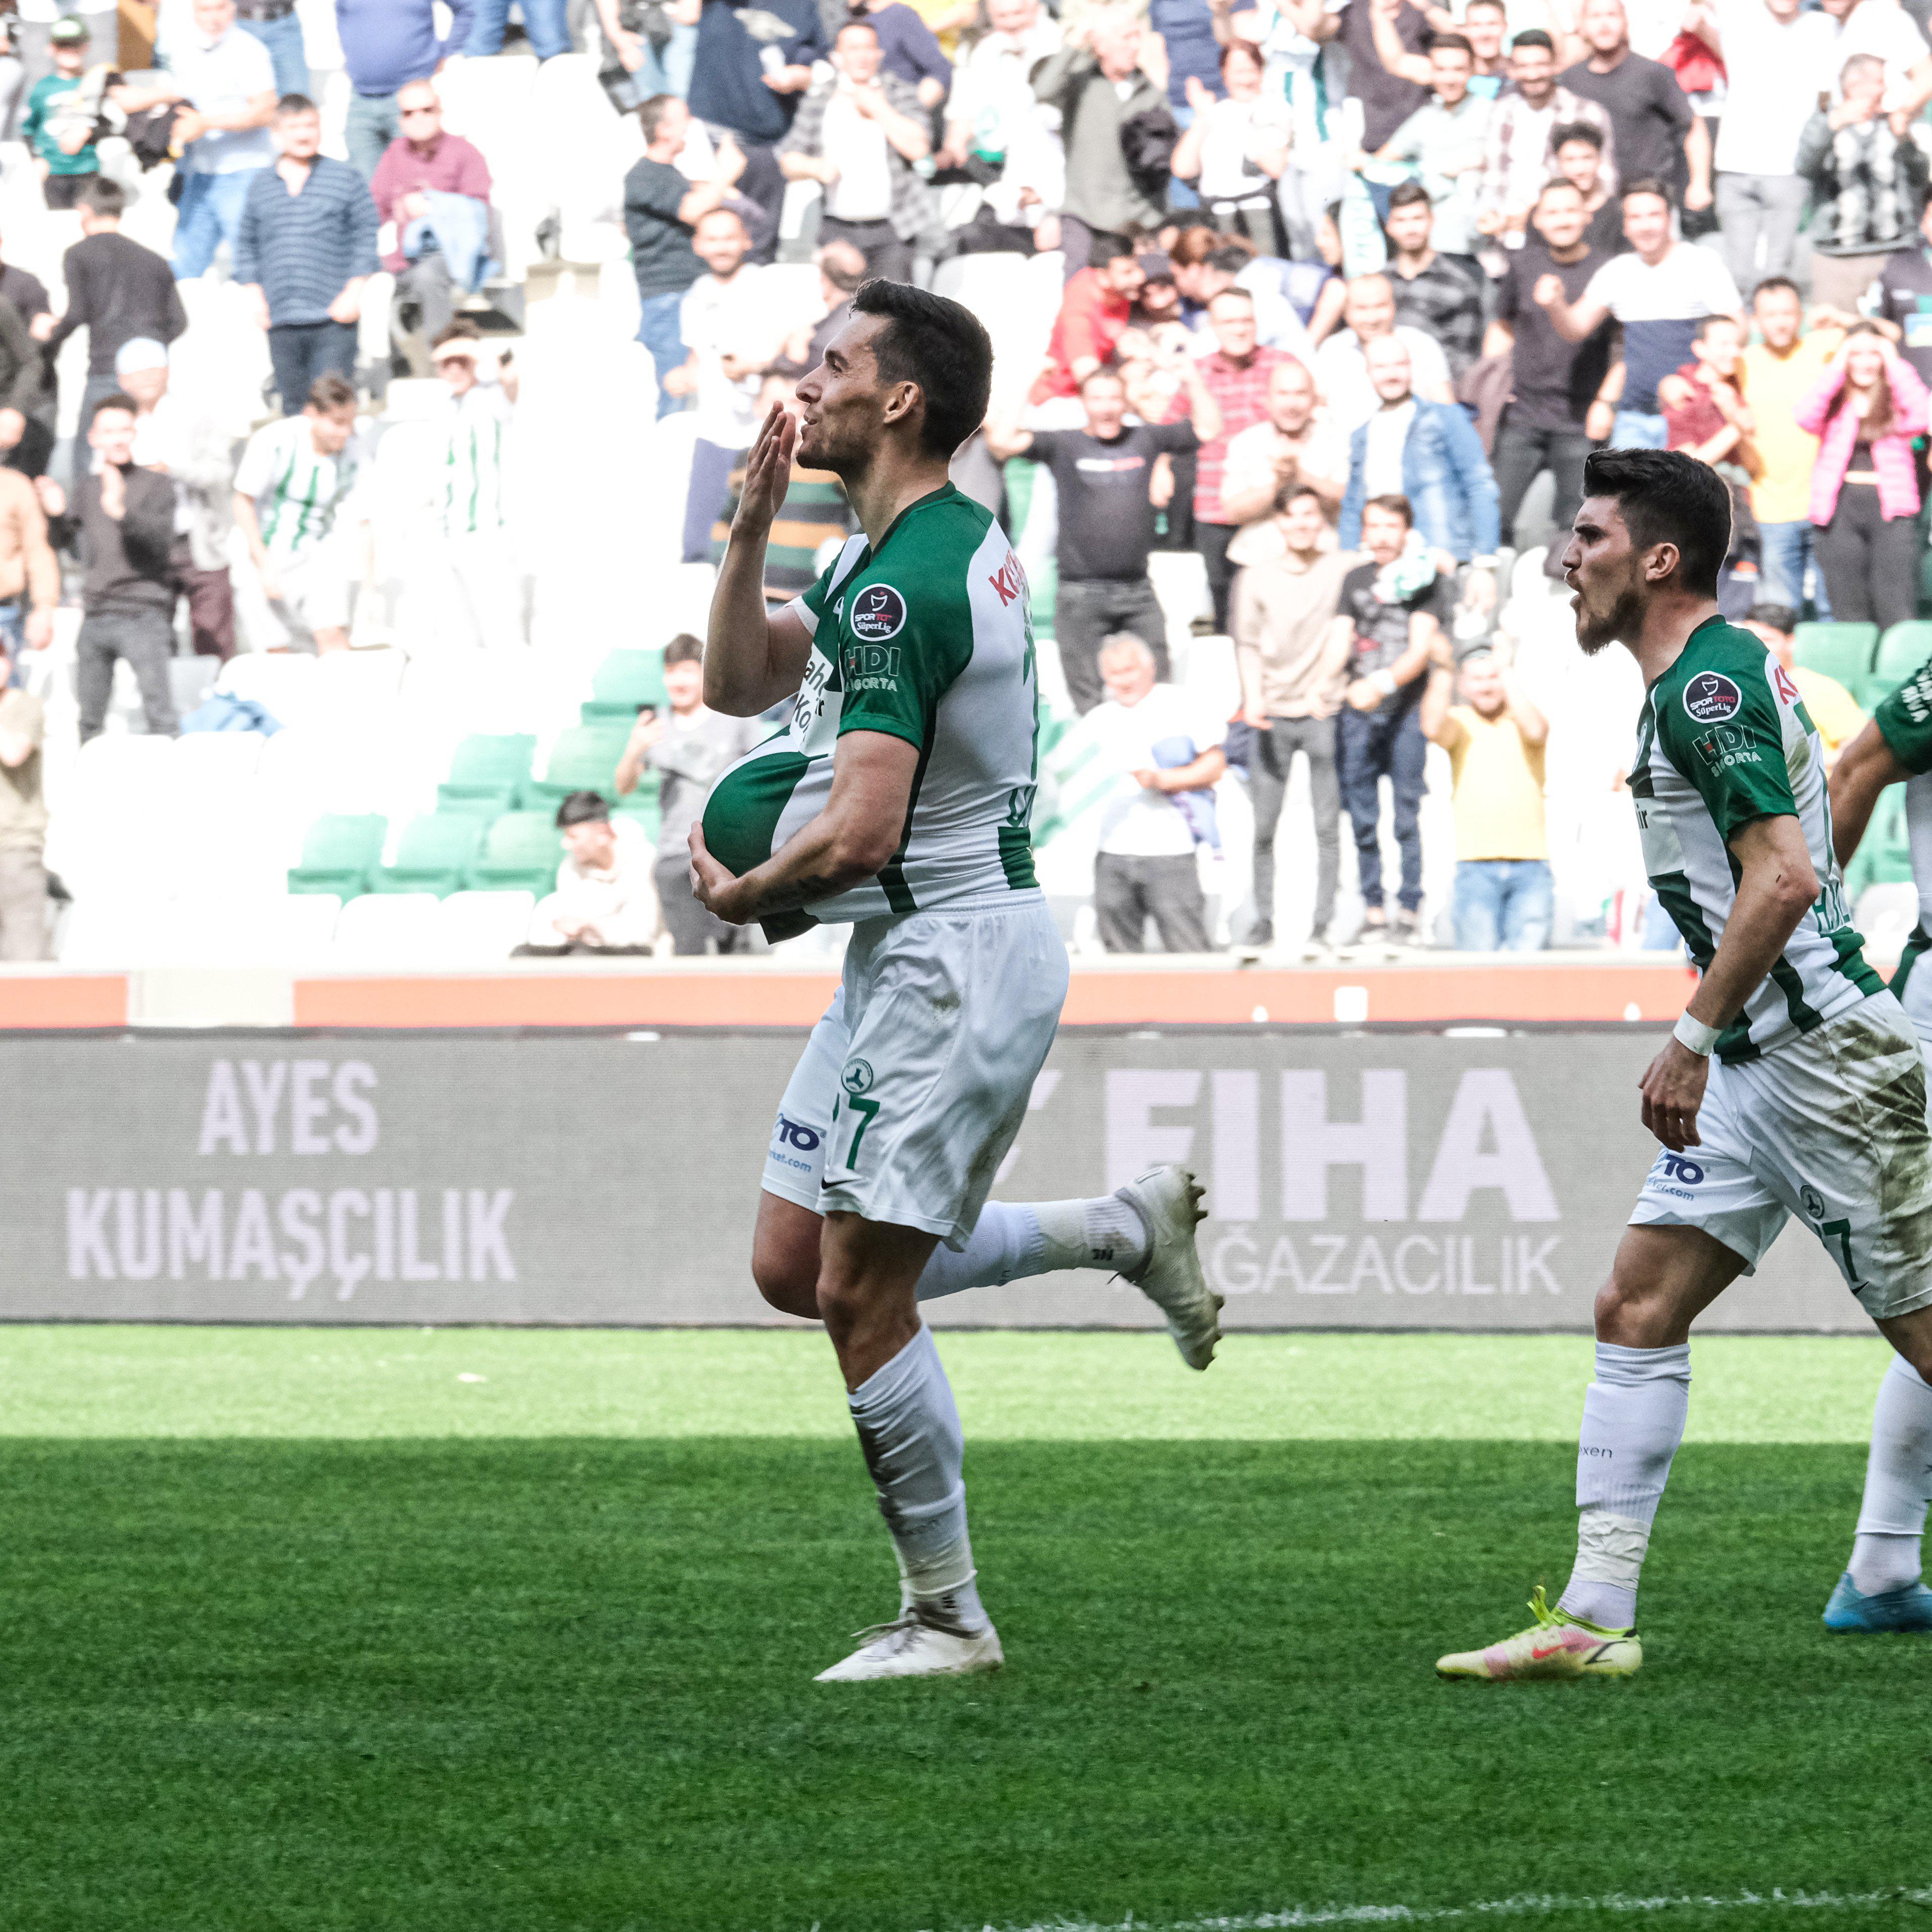 ÖZET | Giresunspor - Sivasspor maç sonucu: 2-2